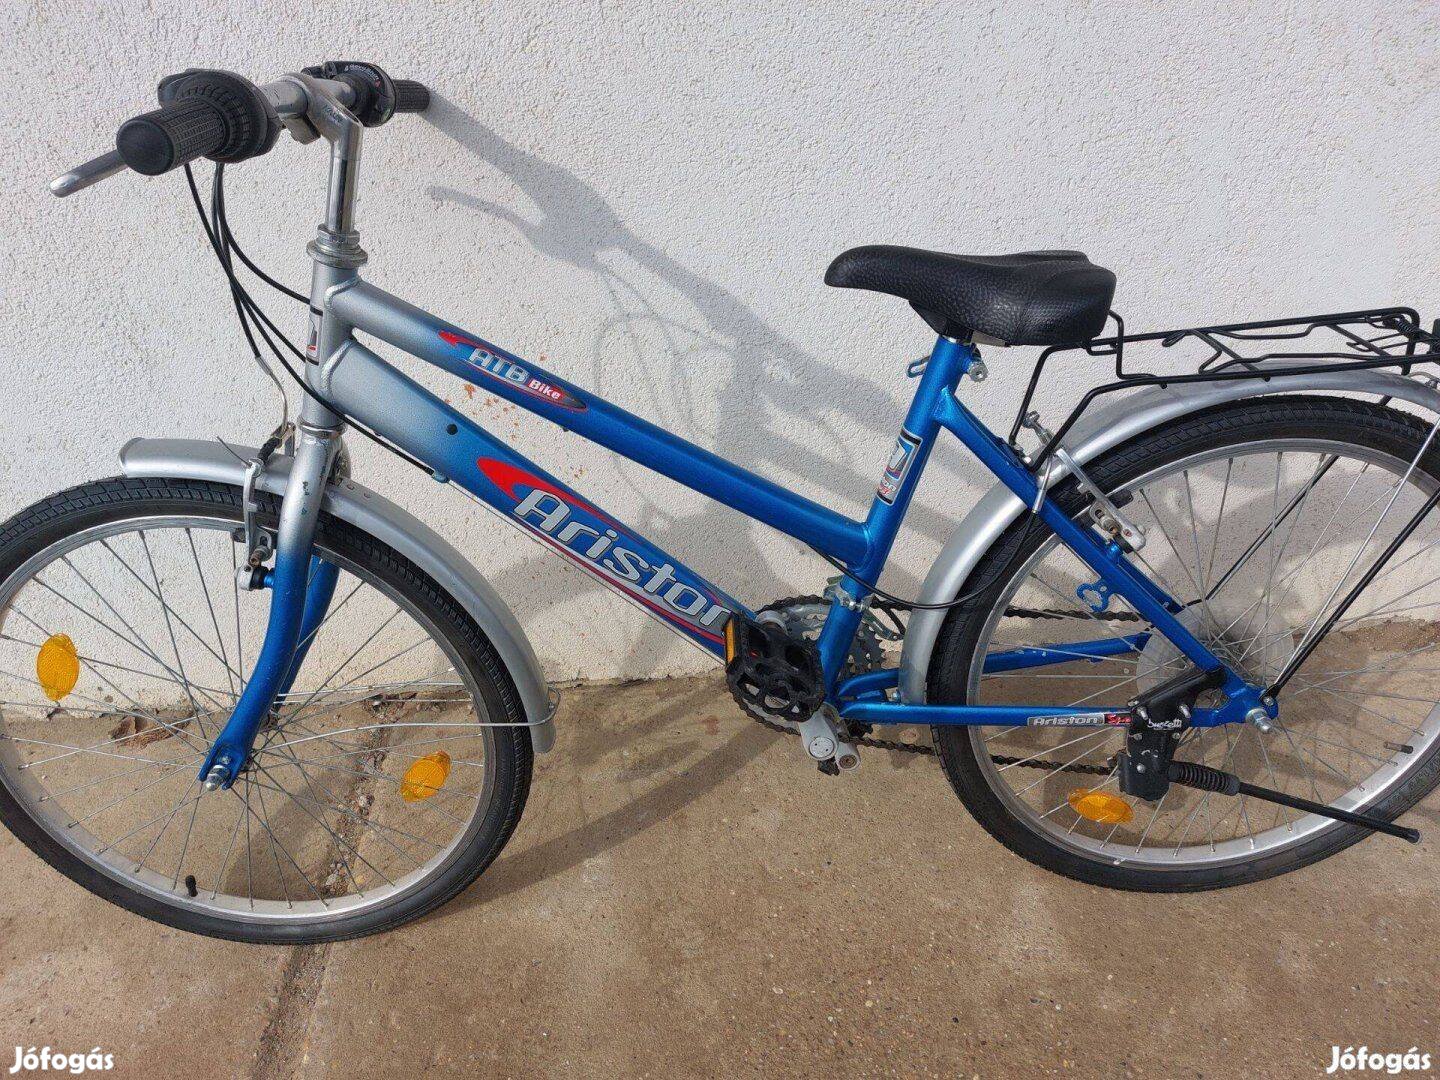 Ariston 24-es kerékpár posta 6000ft